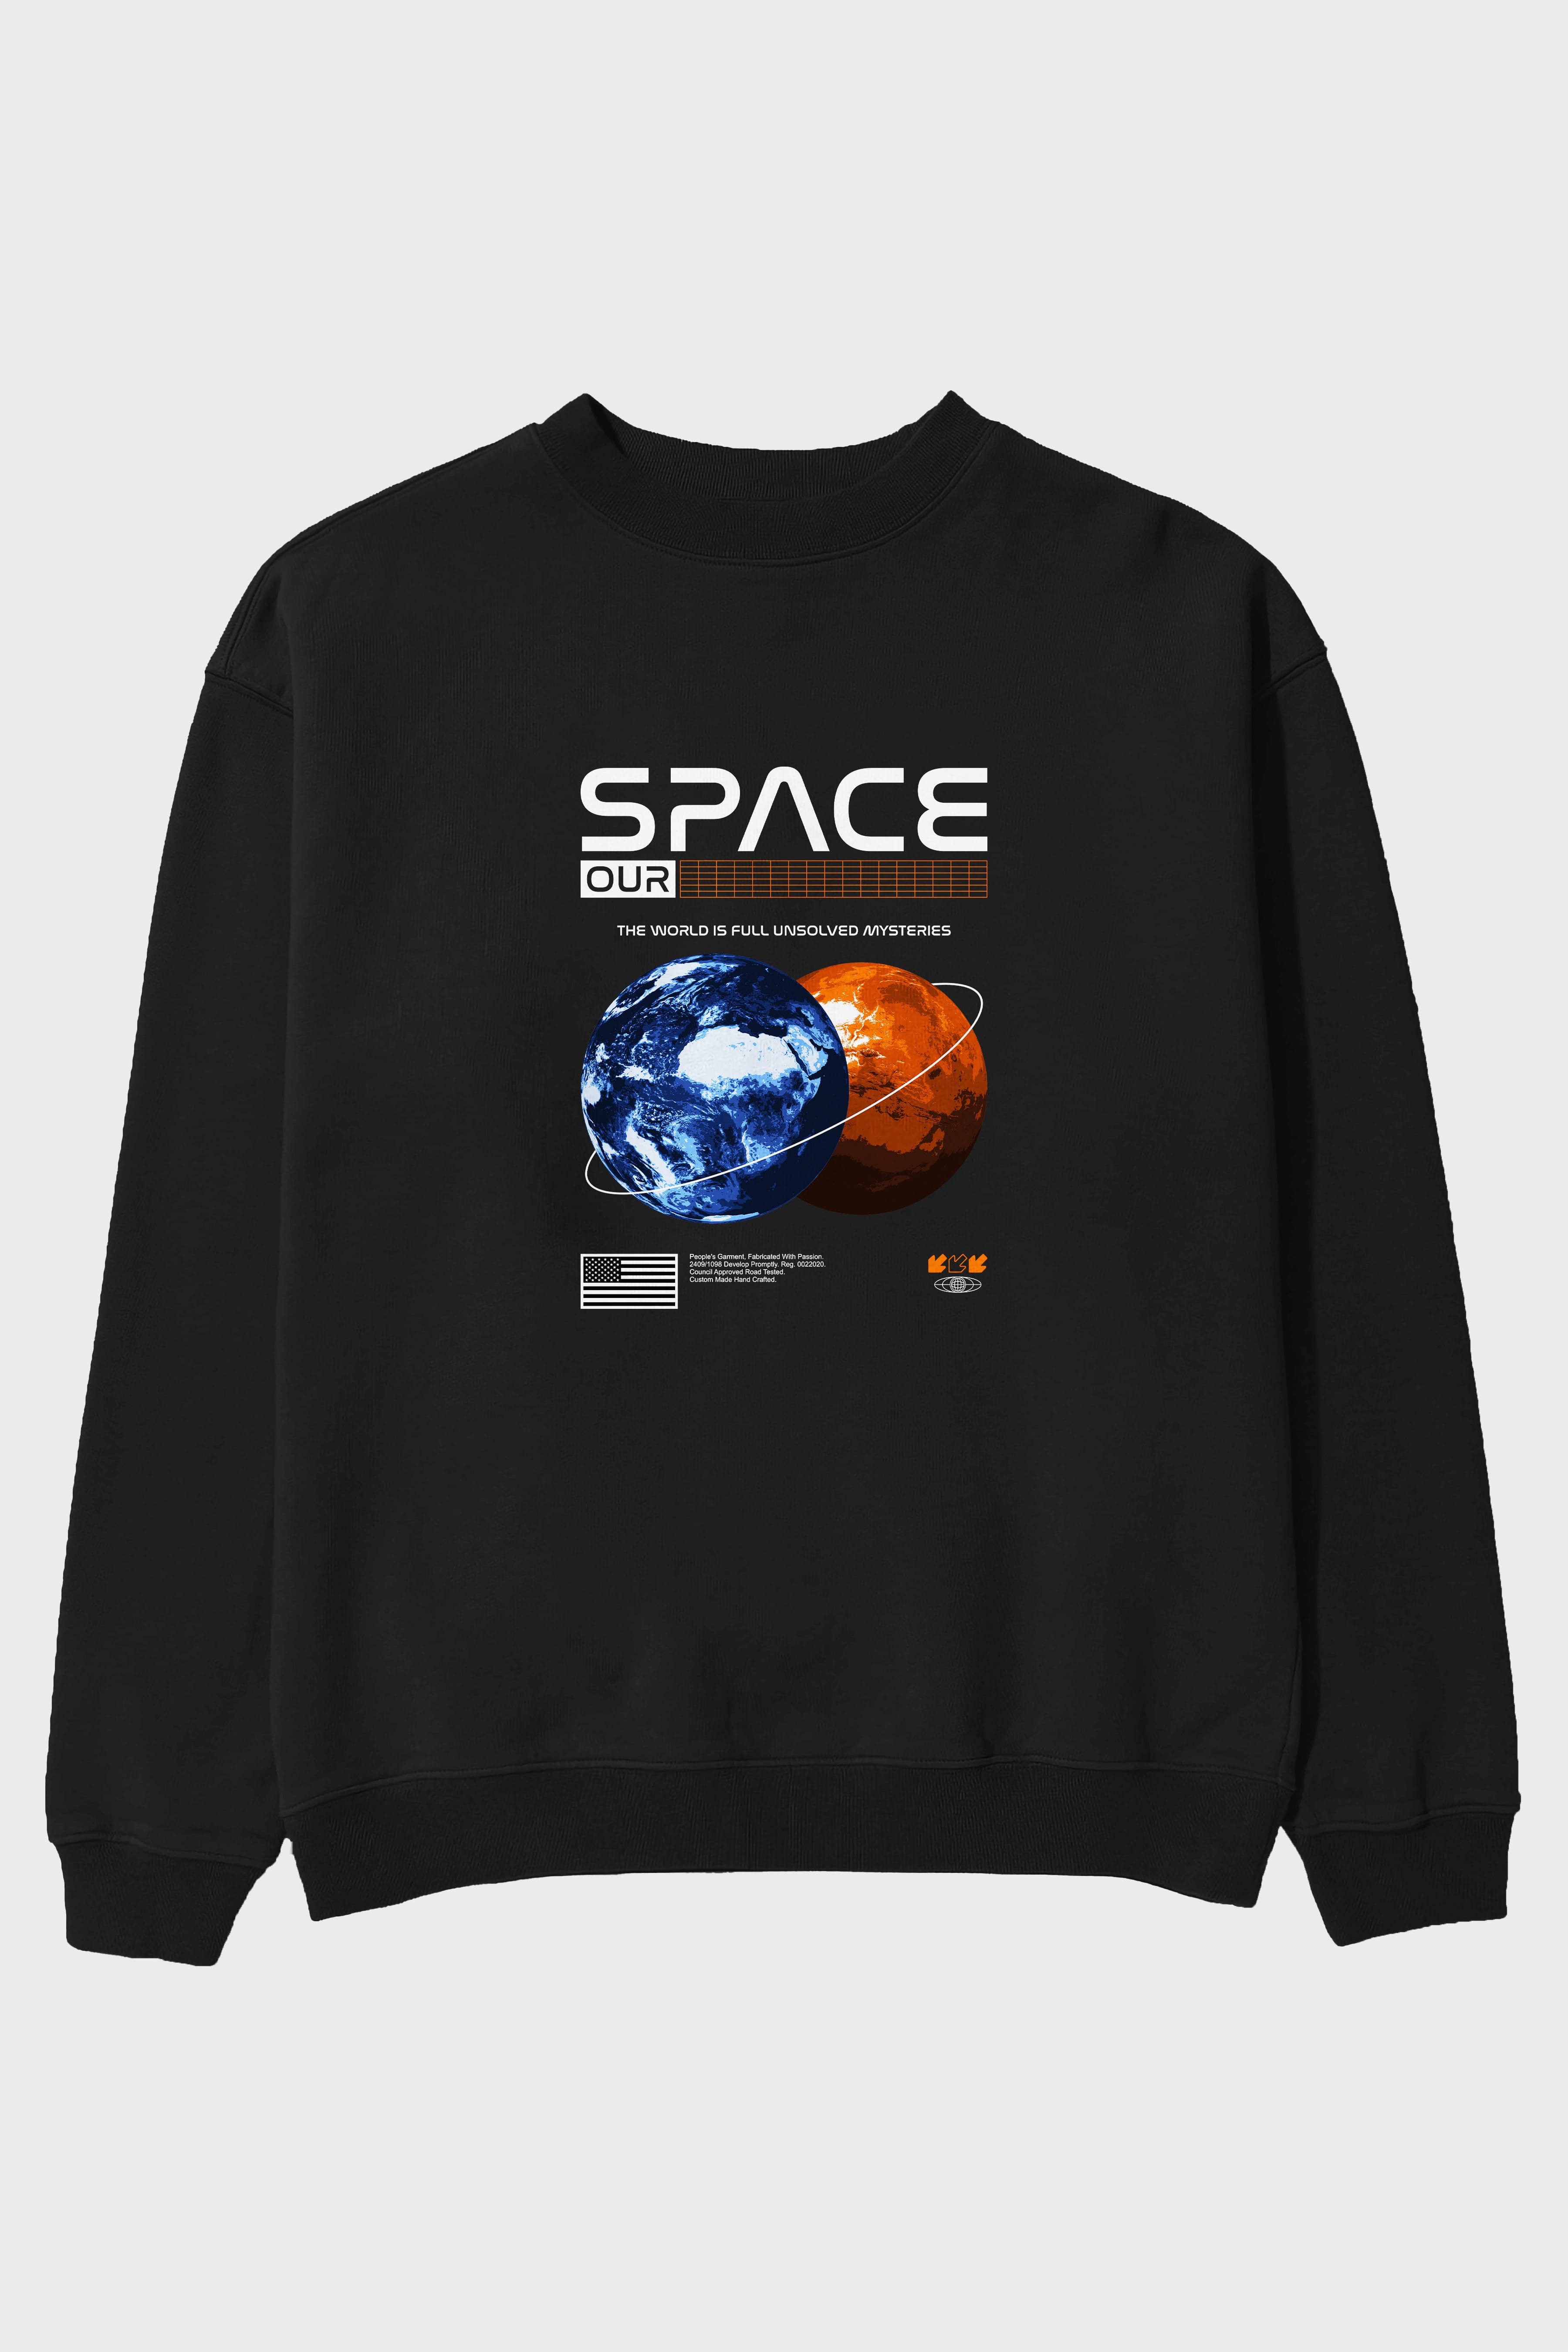 Space Our Ön Baskılı Oversize Sweatshirt Erkek Kadın Unisex